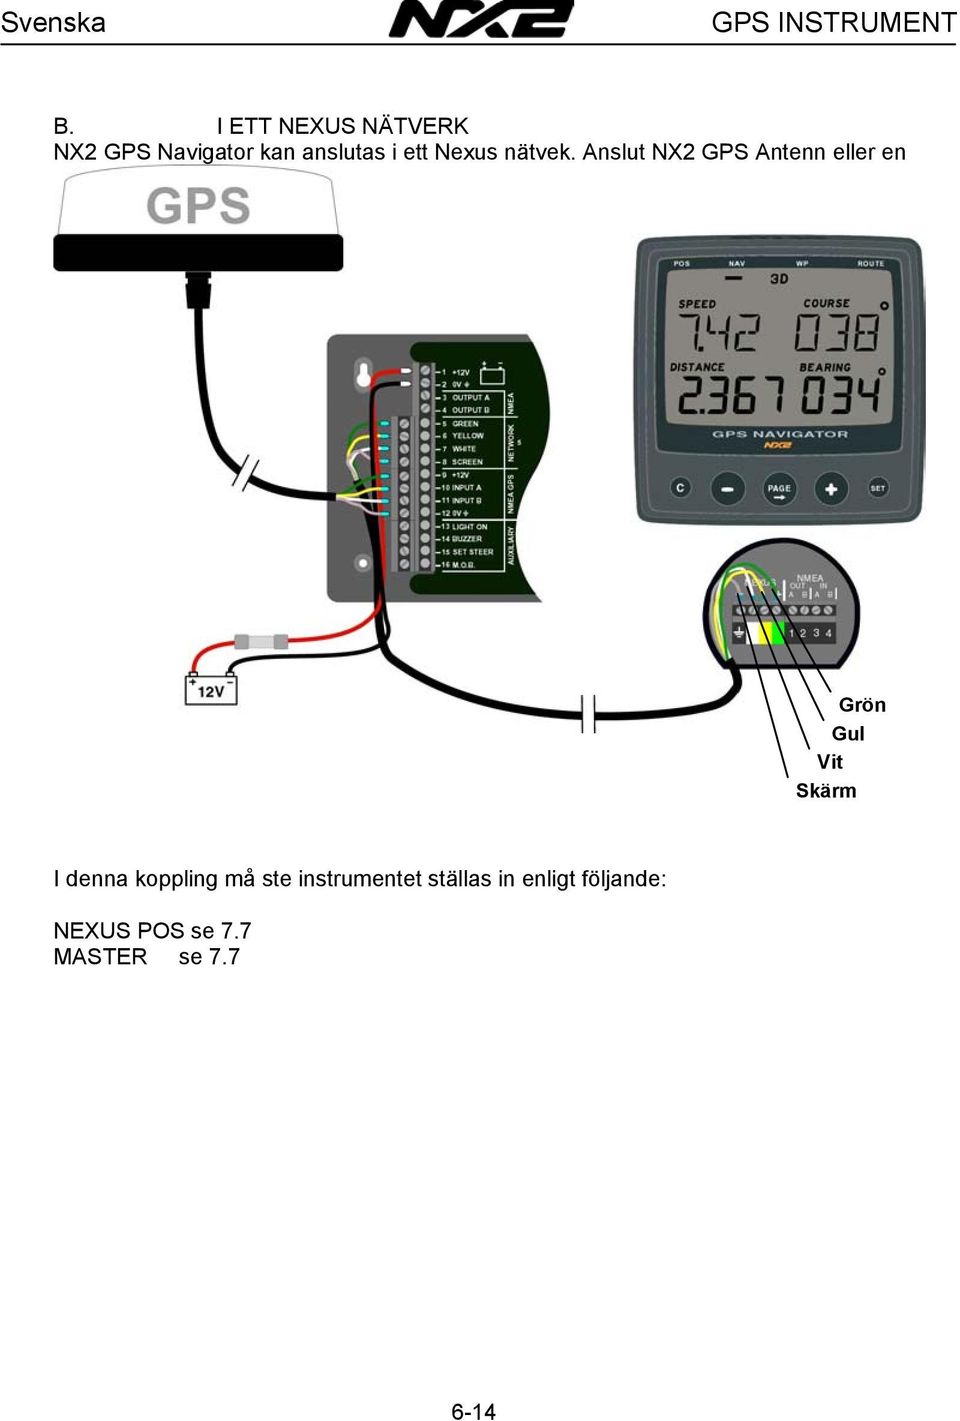 Anslut Nexus nätverkskabel till NX2 GPS Navigator instrumentet enligt bilden nedan.